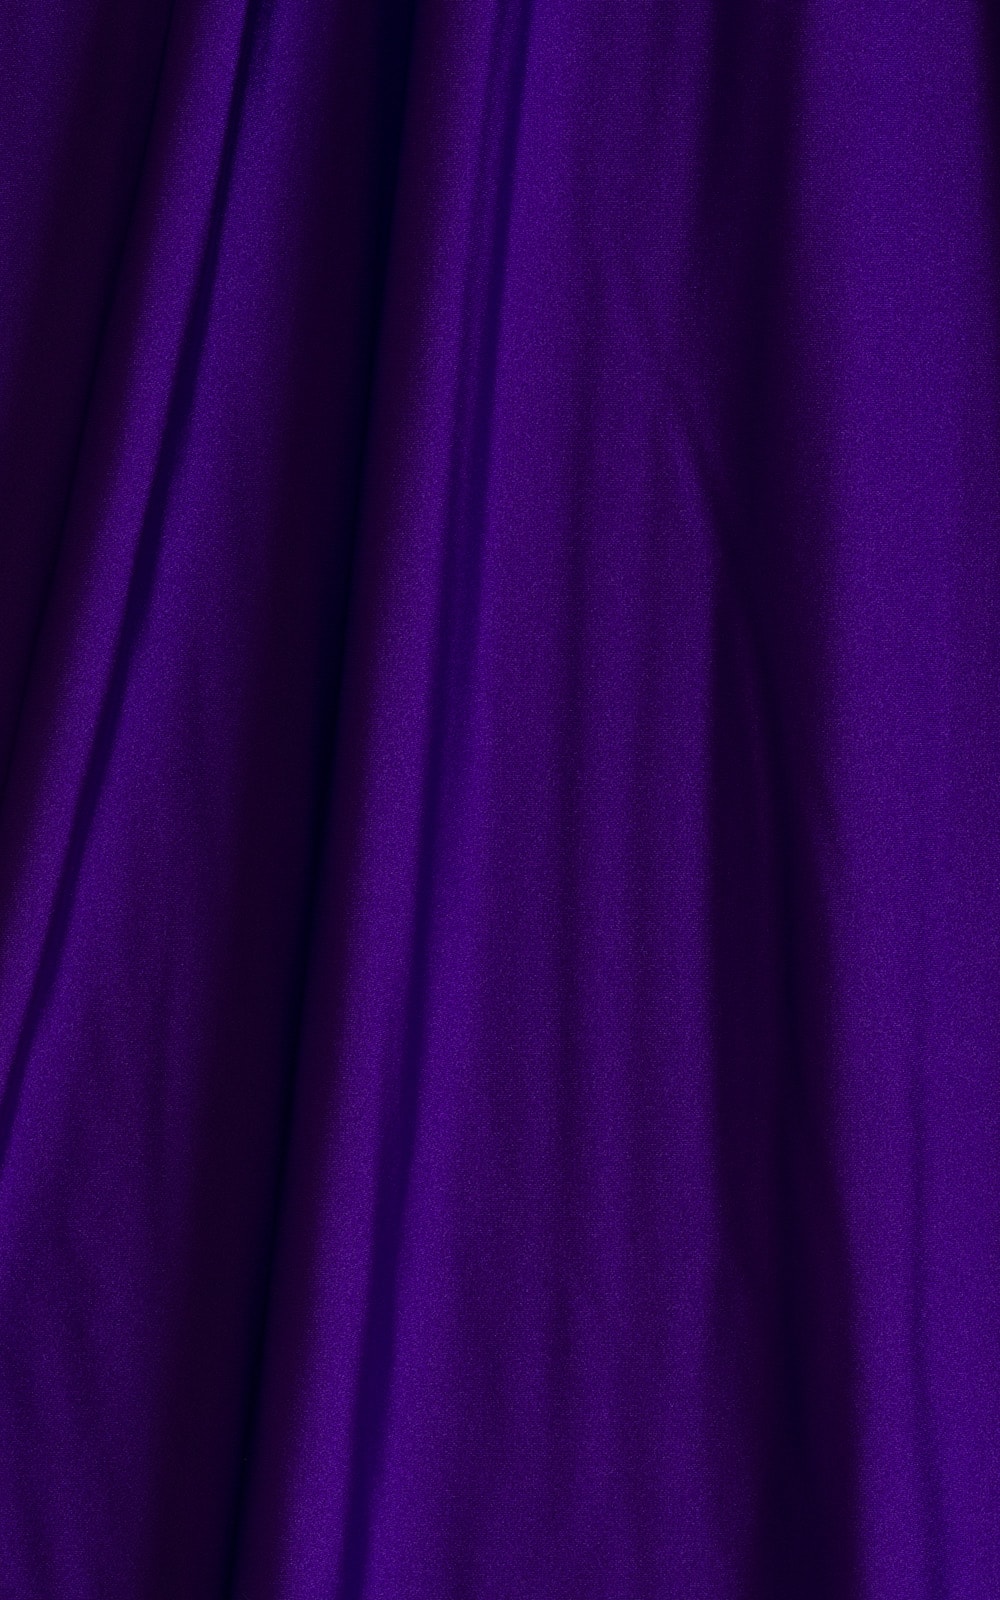 Mini Micro G String Bikini Bottom in Royal Purple Fabric